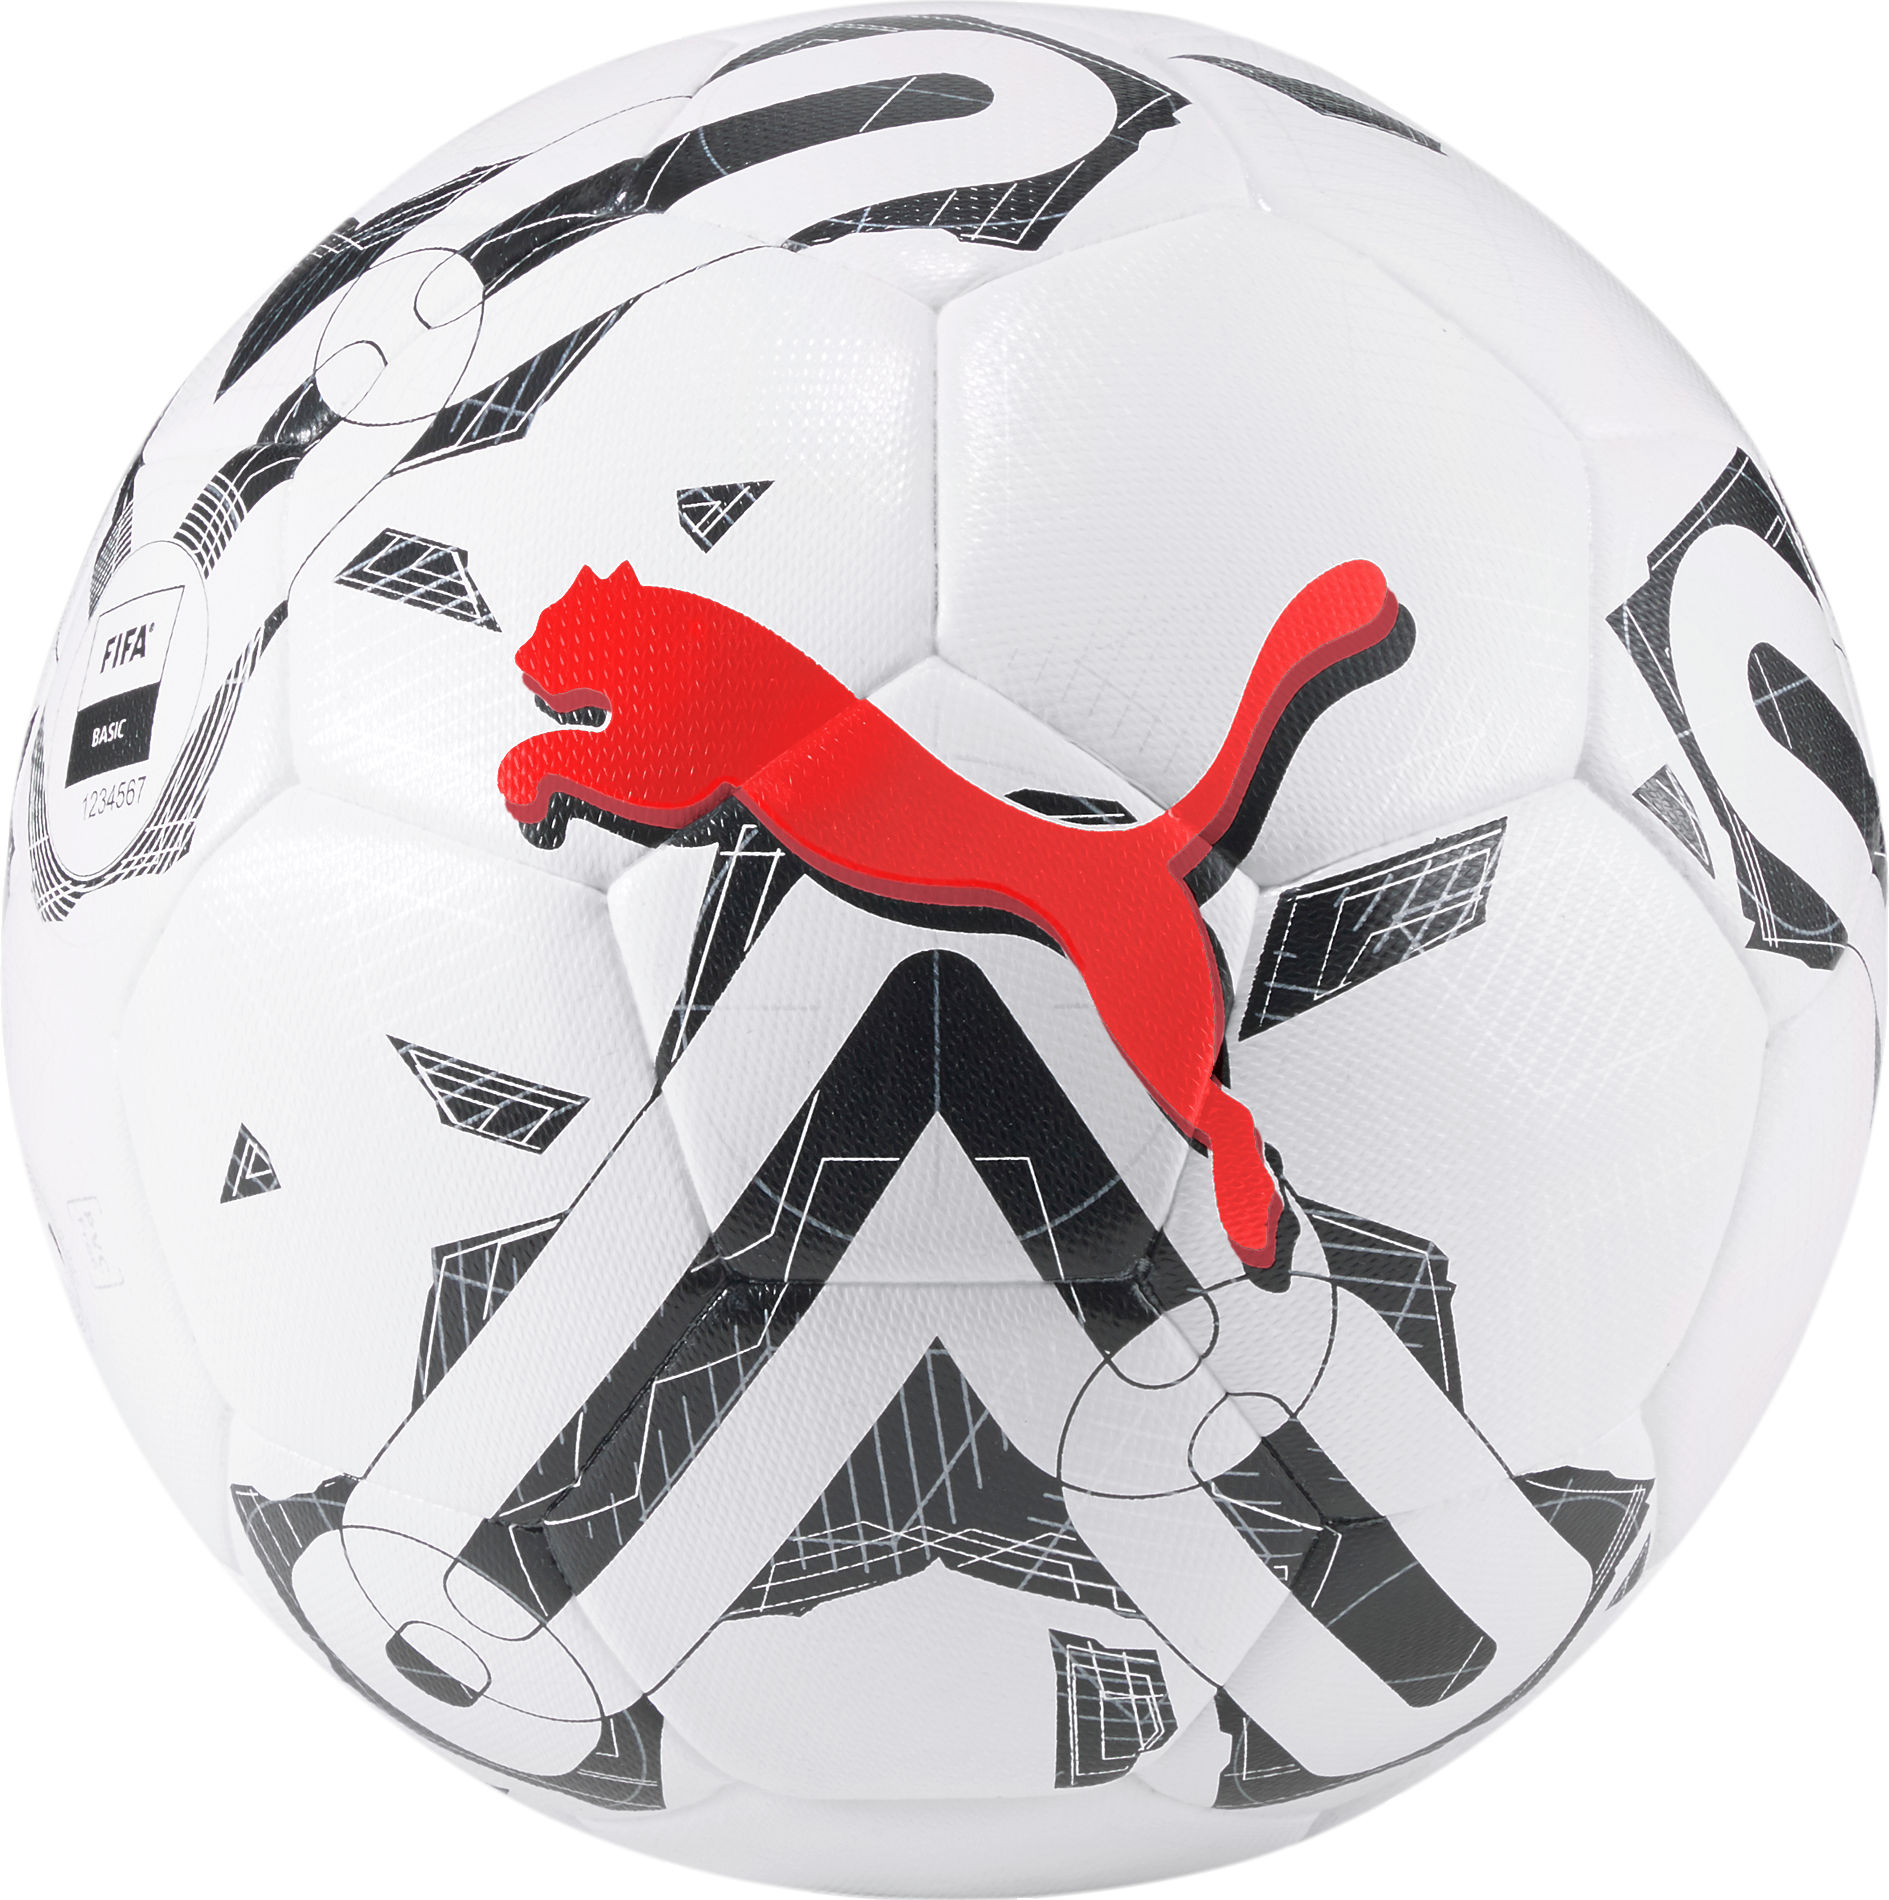 Medicin- och Pilatesboll Puma Orbita 4 HYB (FIFA Basic)